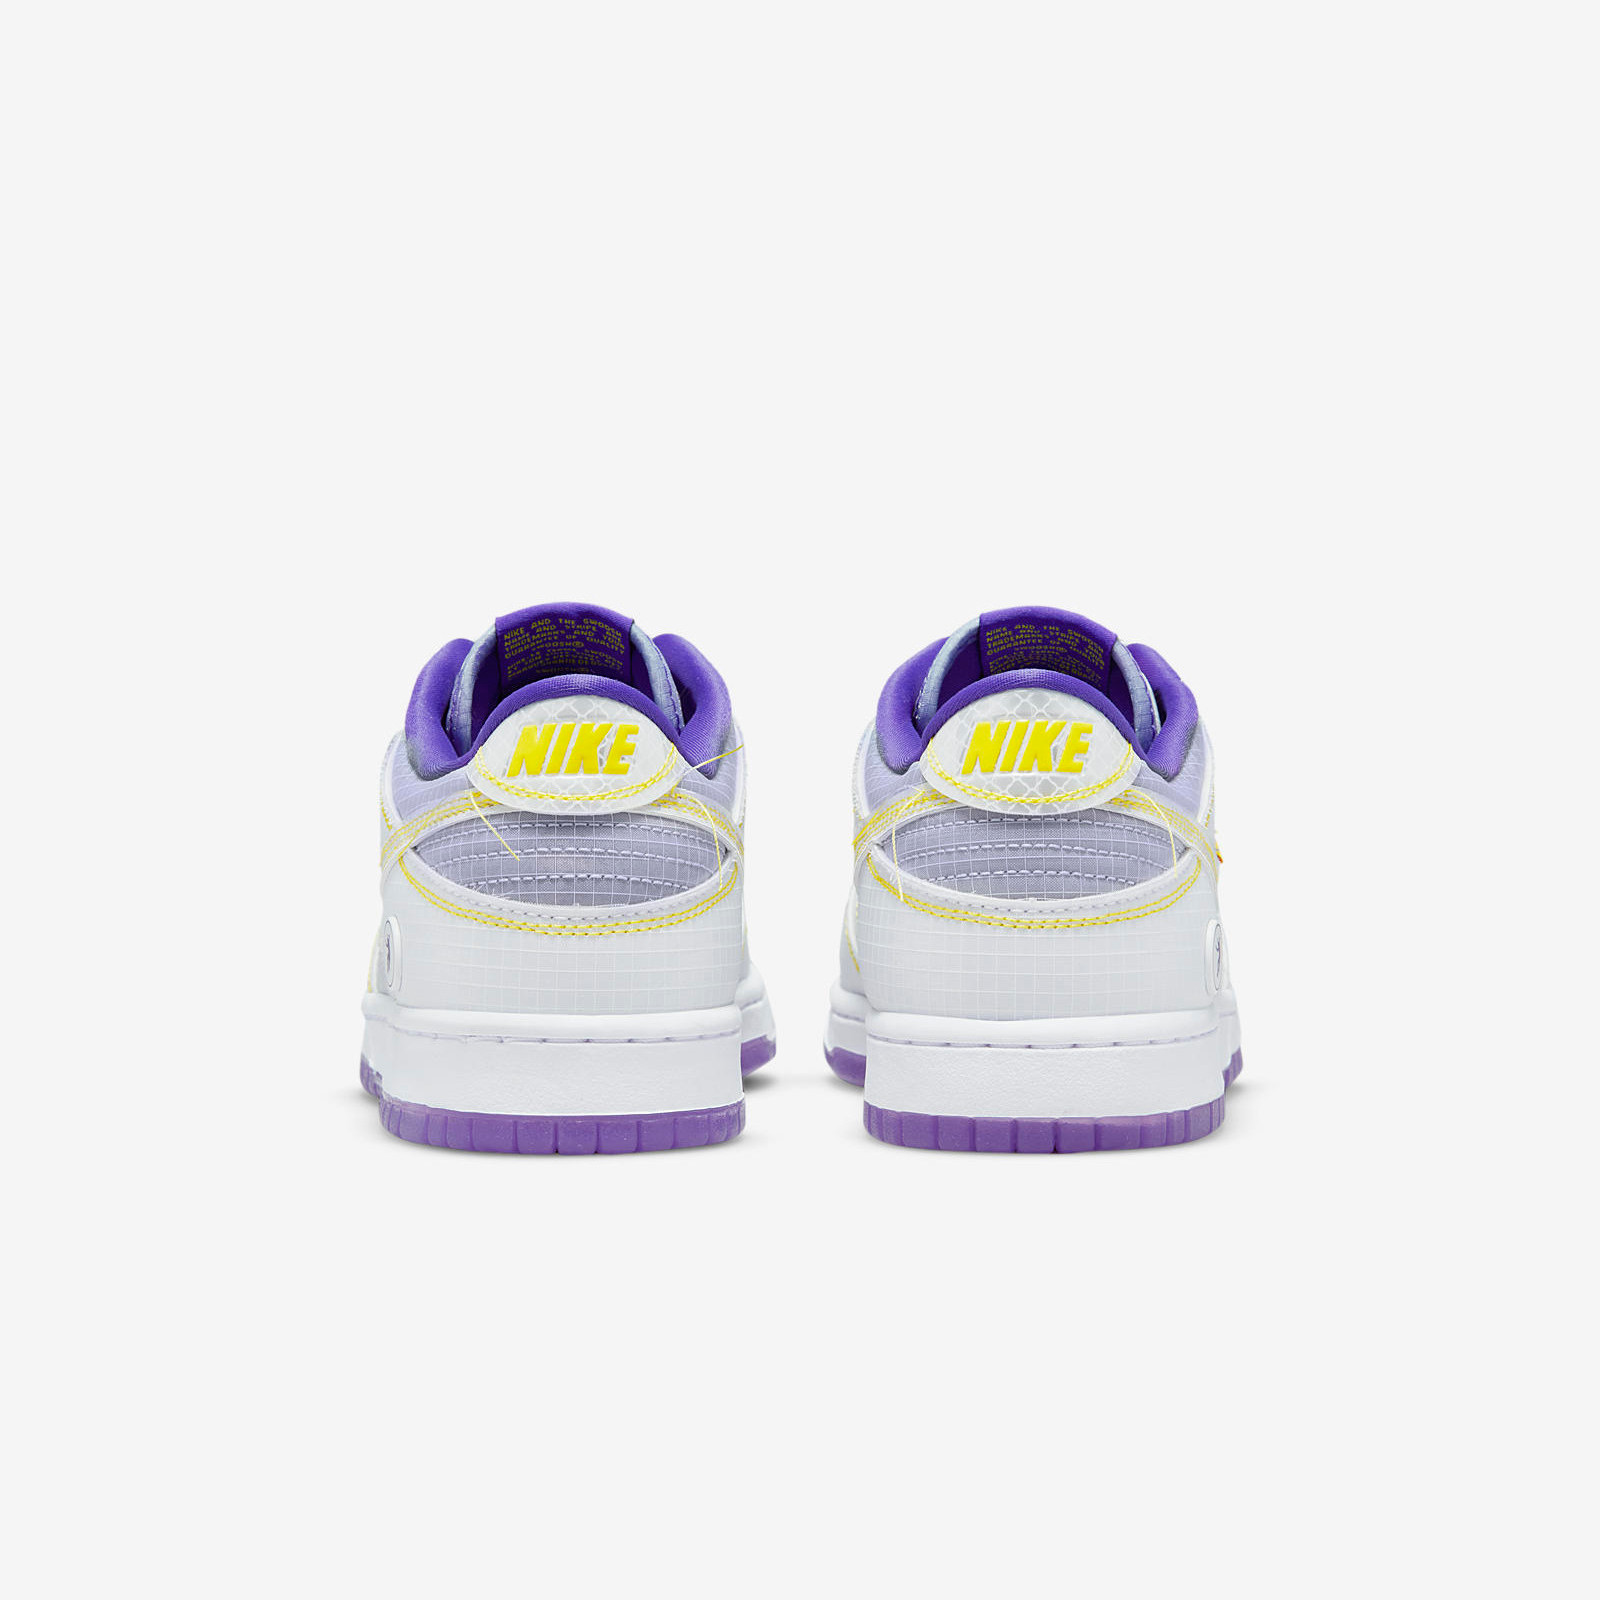 Union LA x Nike
Dunk Low
« Court Purple »